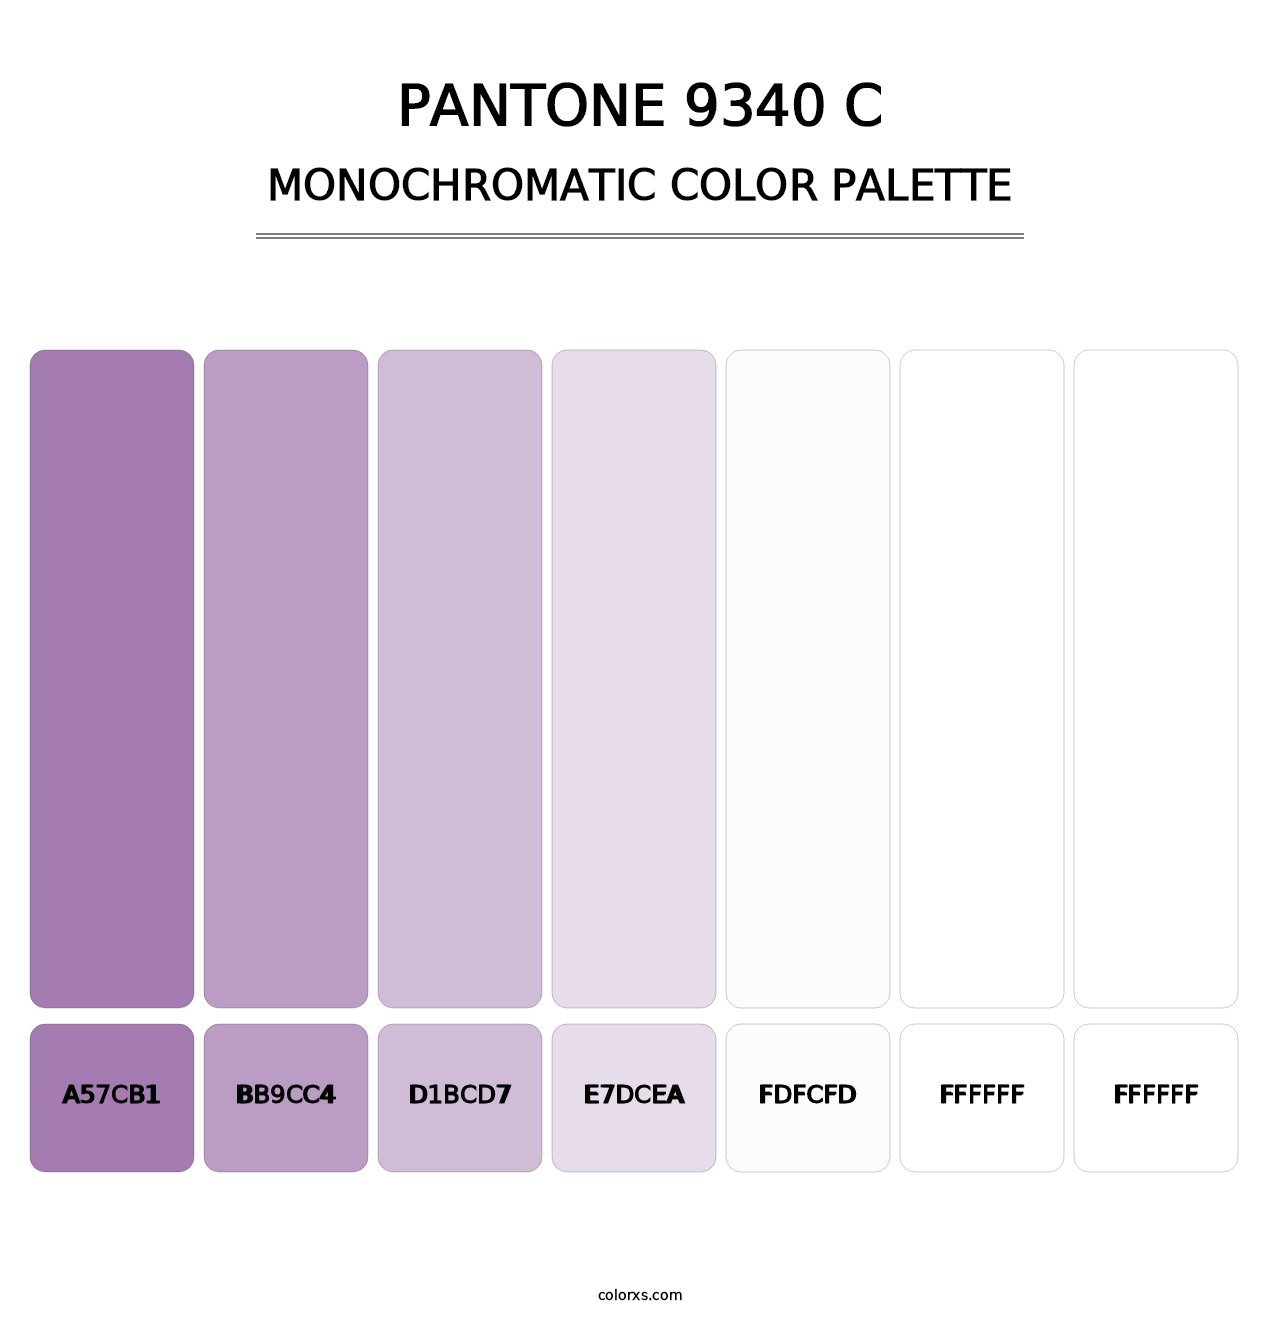 PANTONE 9340 C - Monochromatic Color Palette